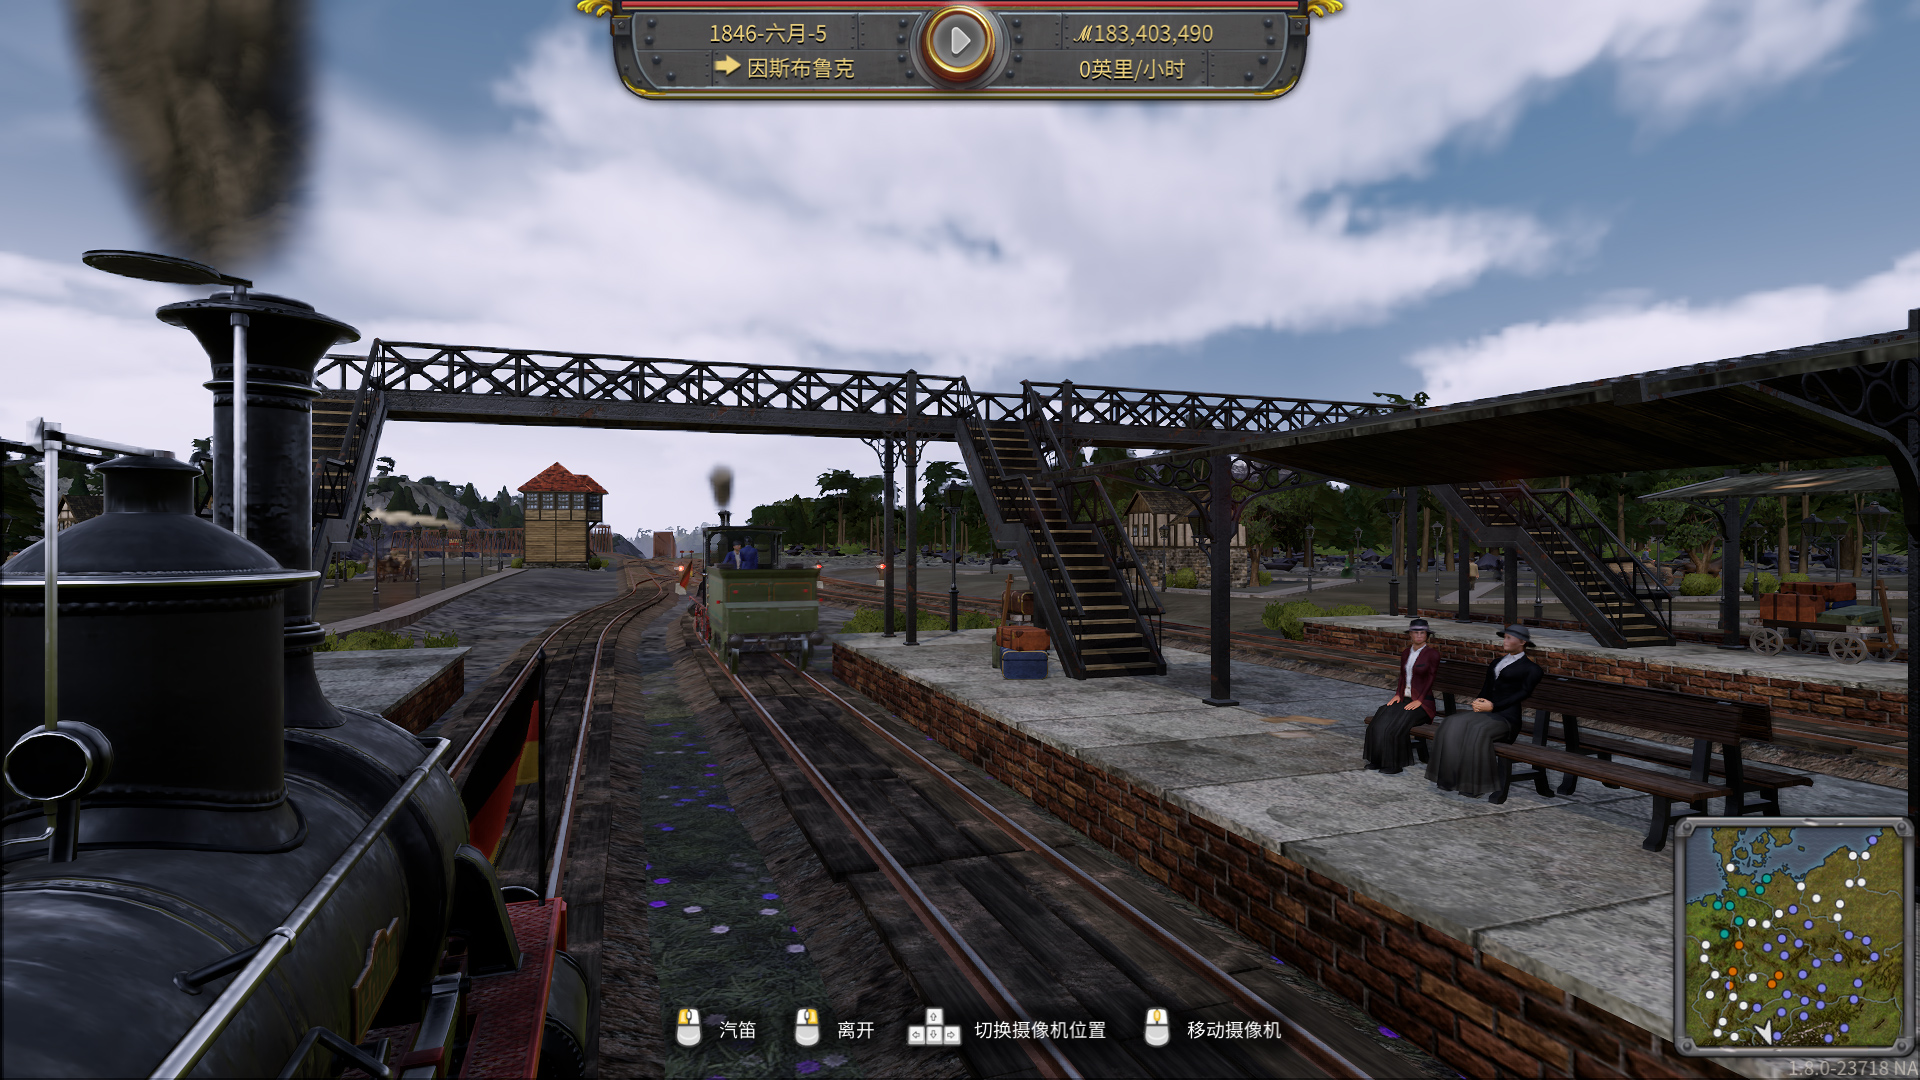 踏上德意志的山河 火車模擬遊戲《鐵路帝國》公布全新DLC